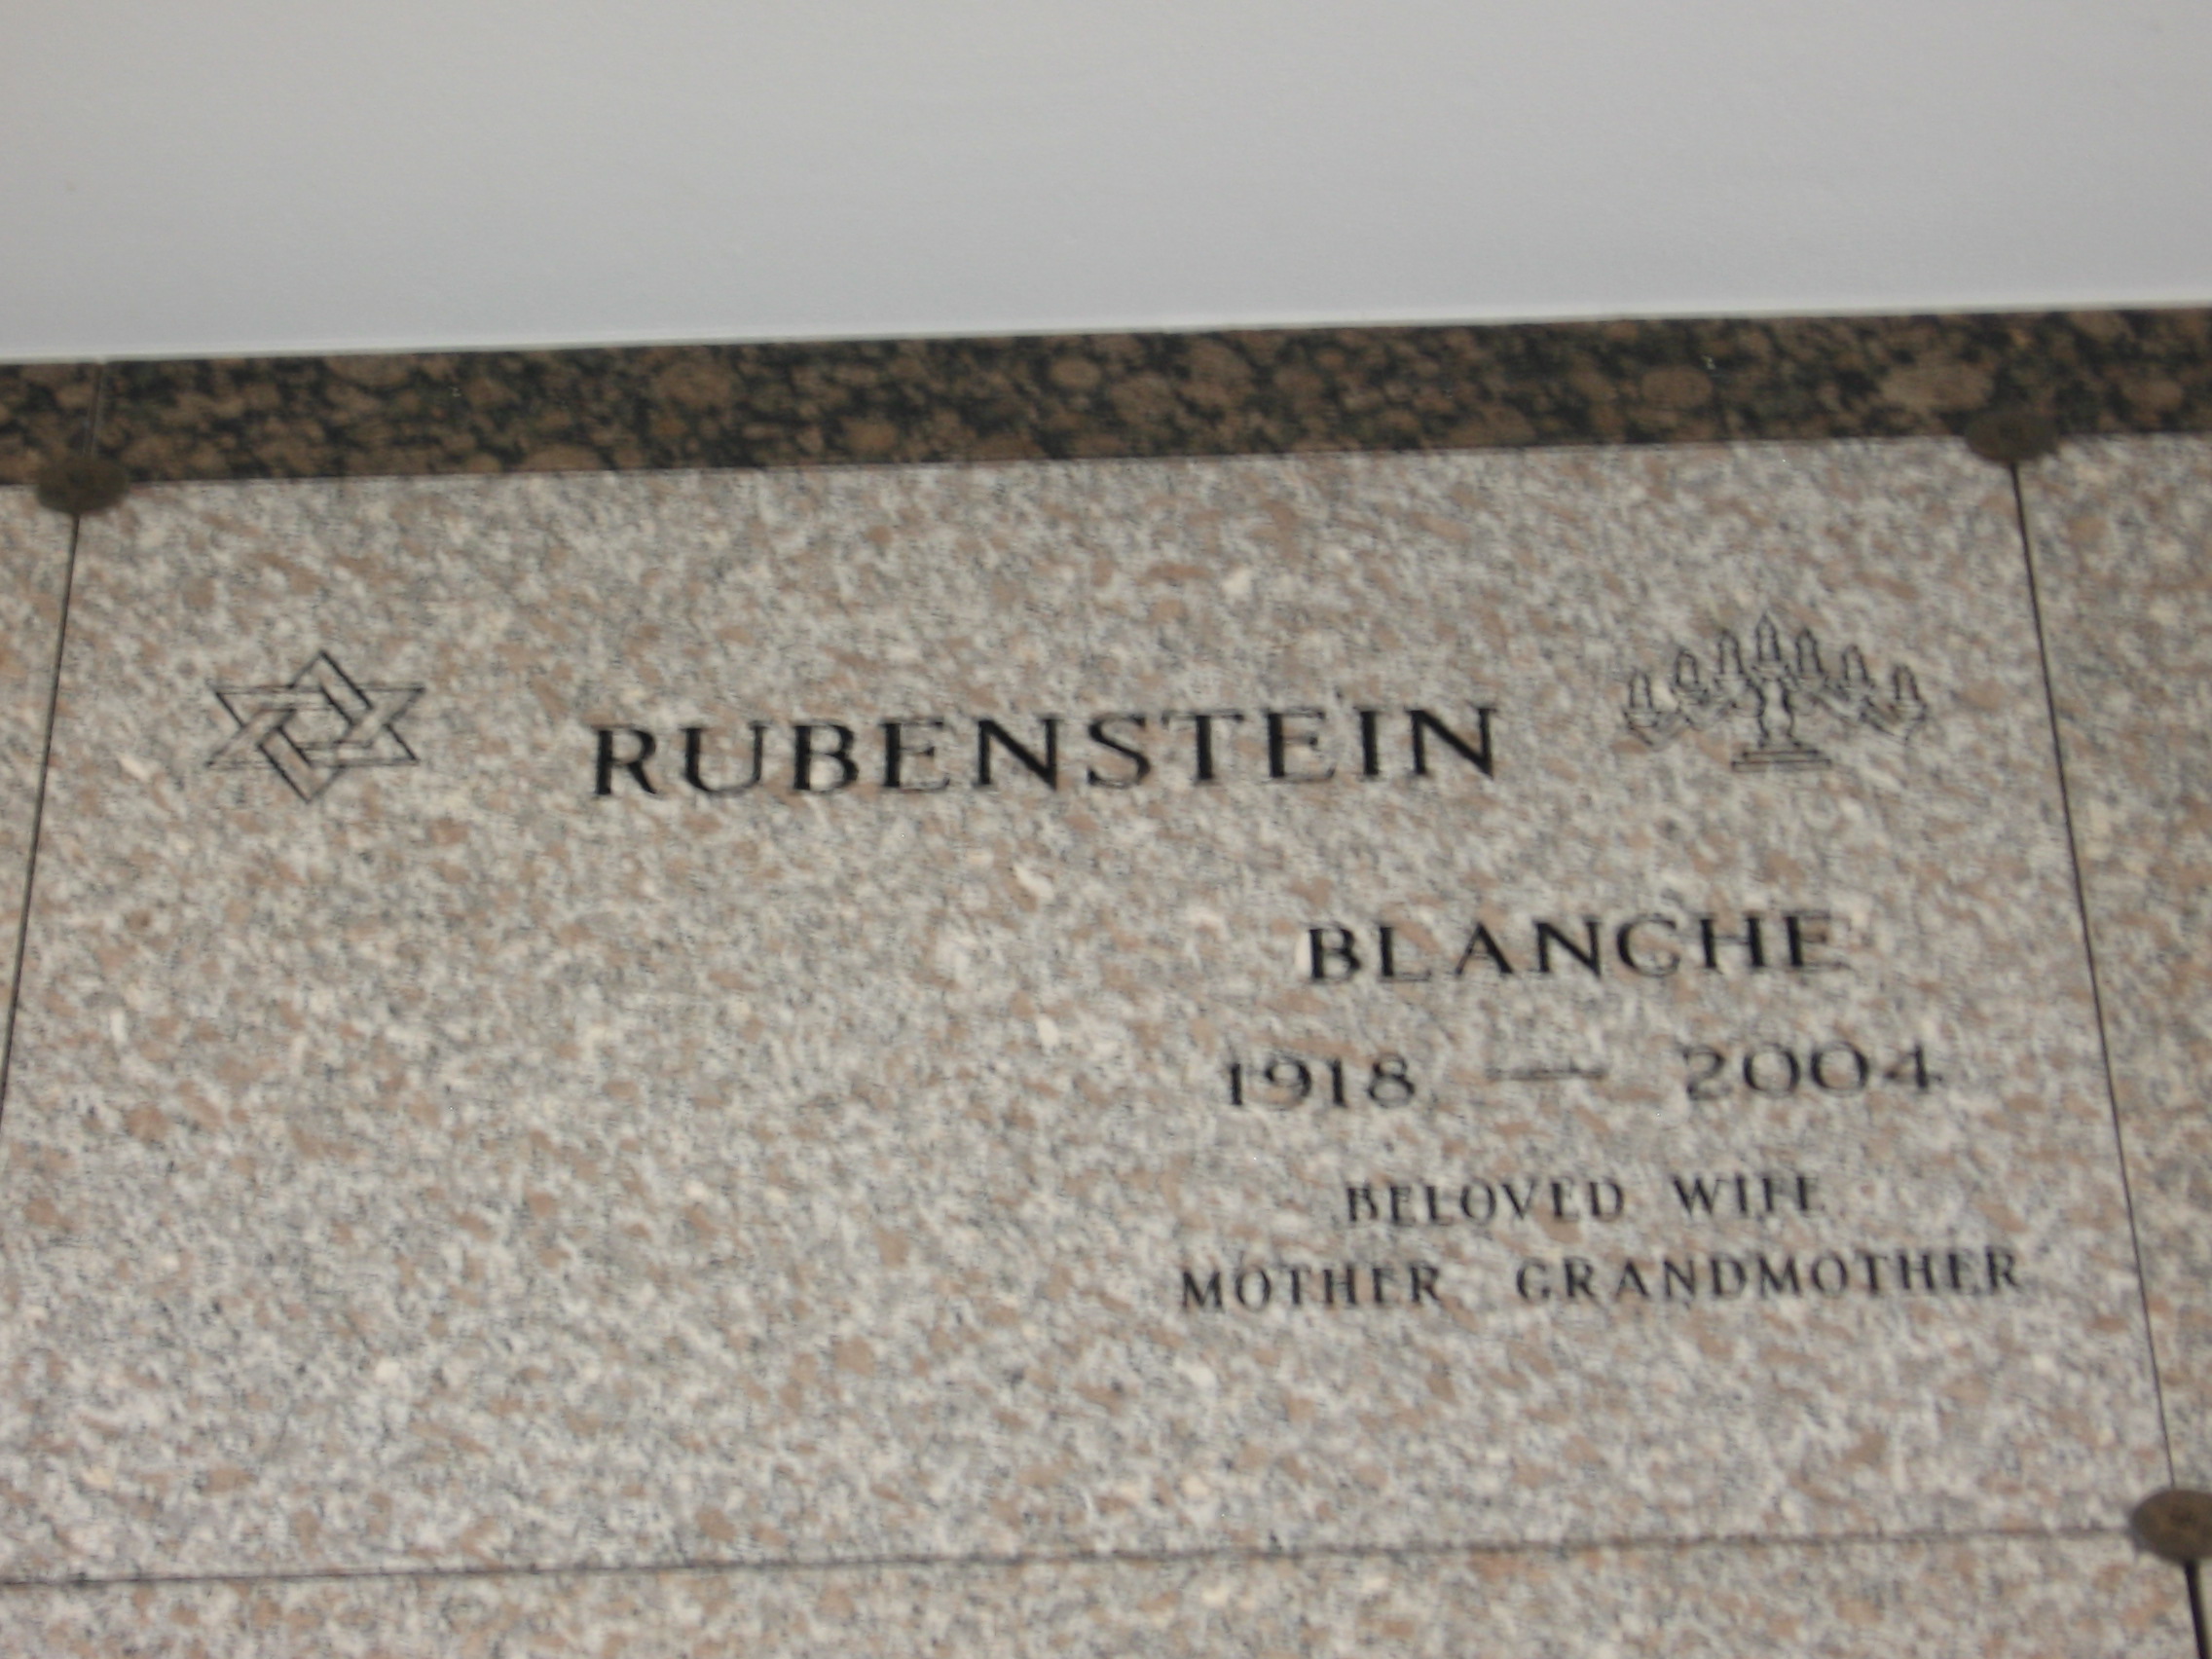 Blanche Rubenstein